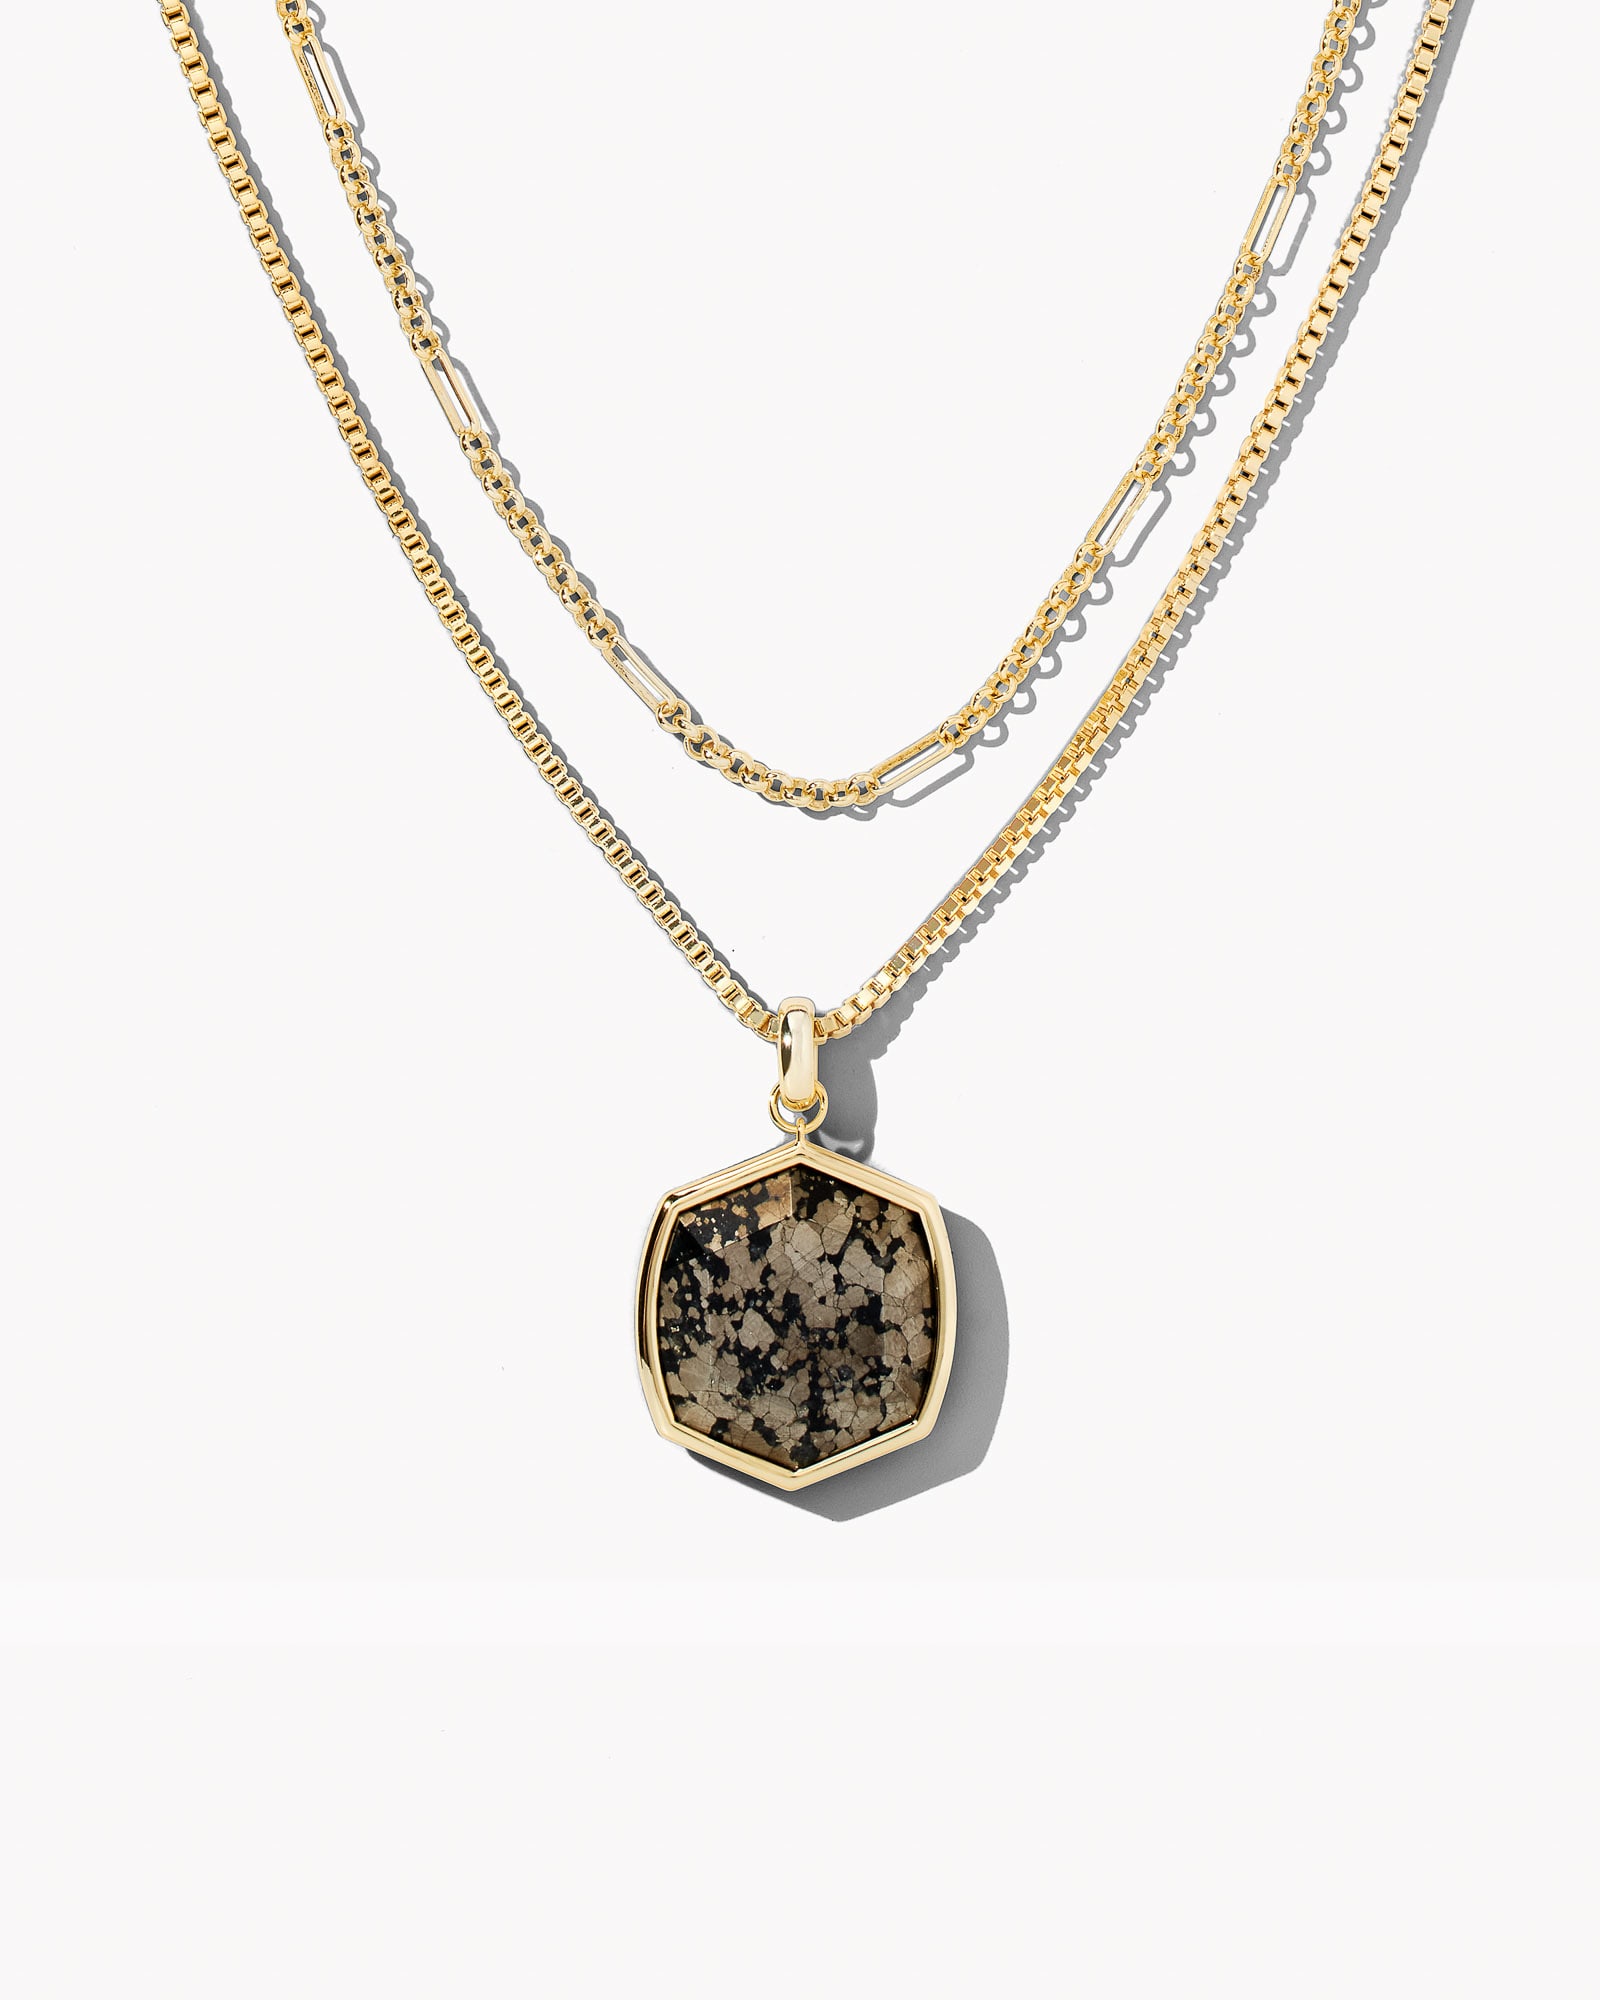 Davis Gold Chain Triple Strand Necklace in Black Pyrite